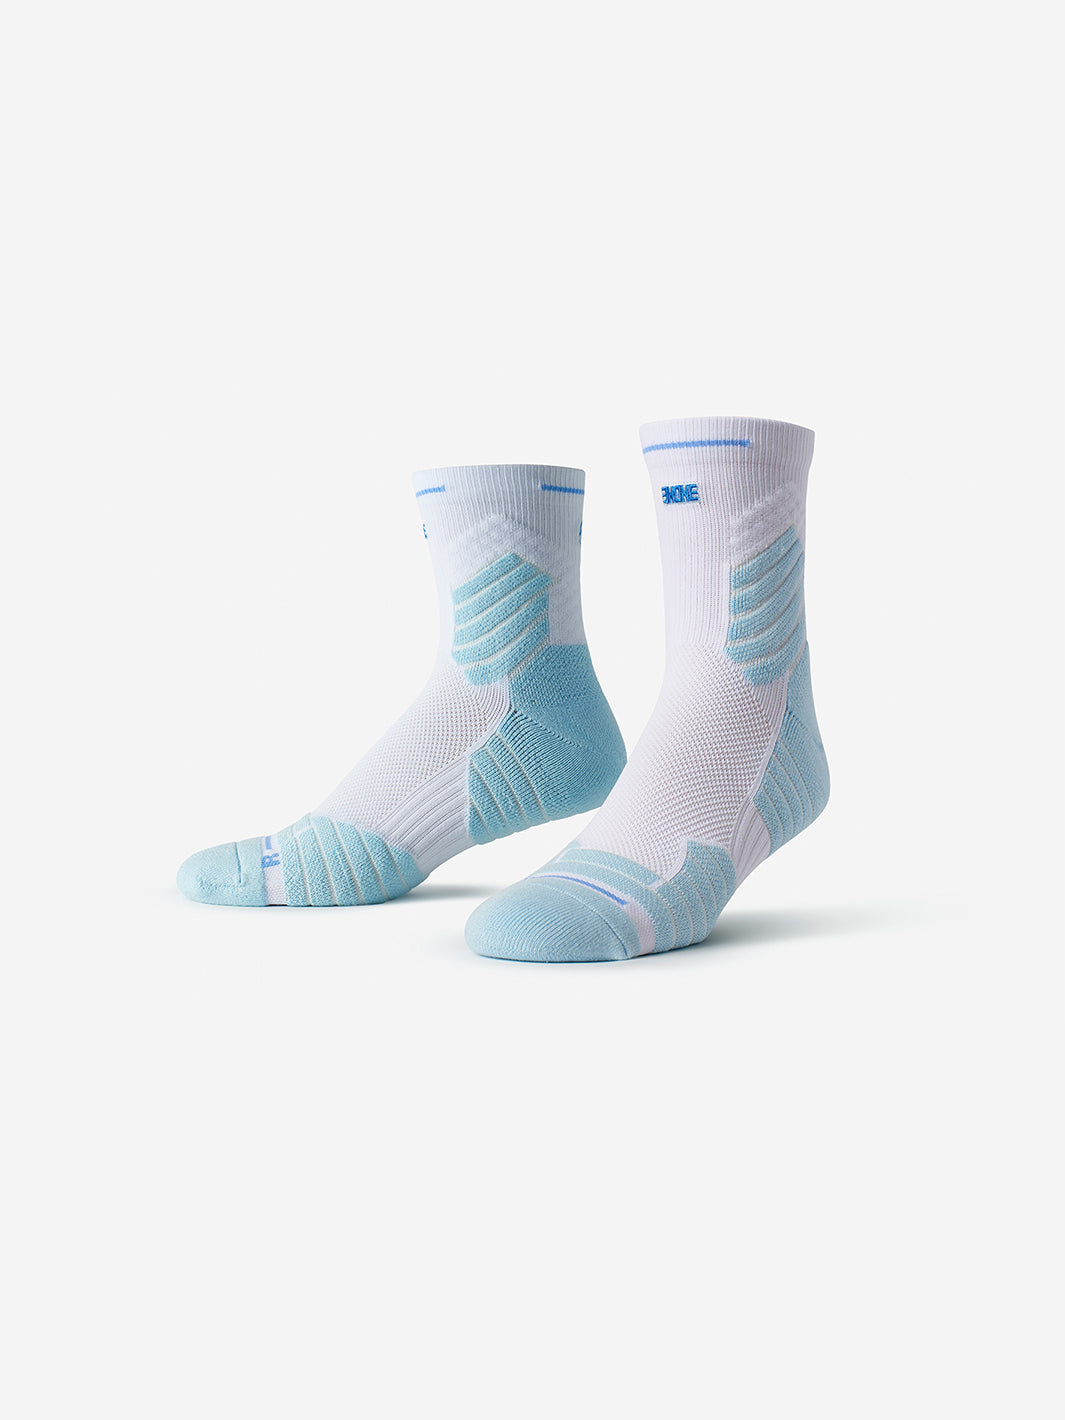 Light Blue & White Athletic Socks | Cushioned Everyday Cotton-Blend Ankle Socks | SMRTFT